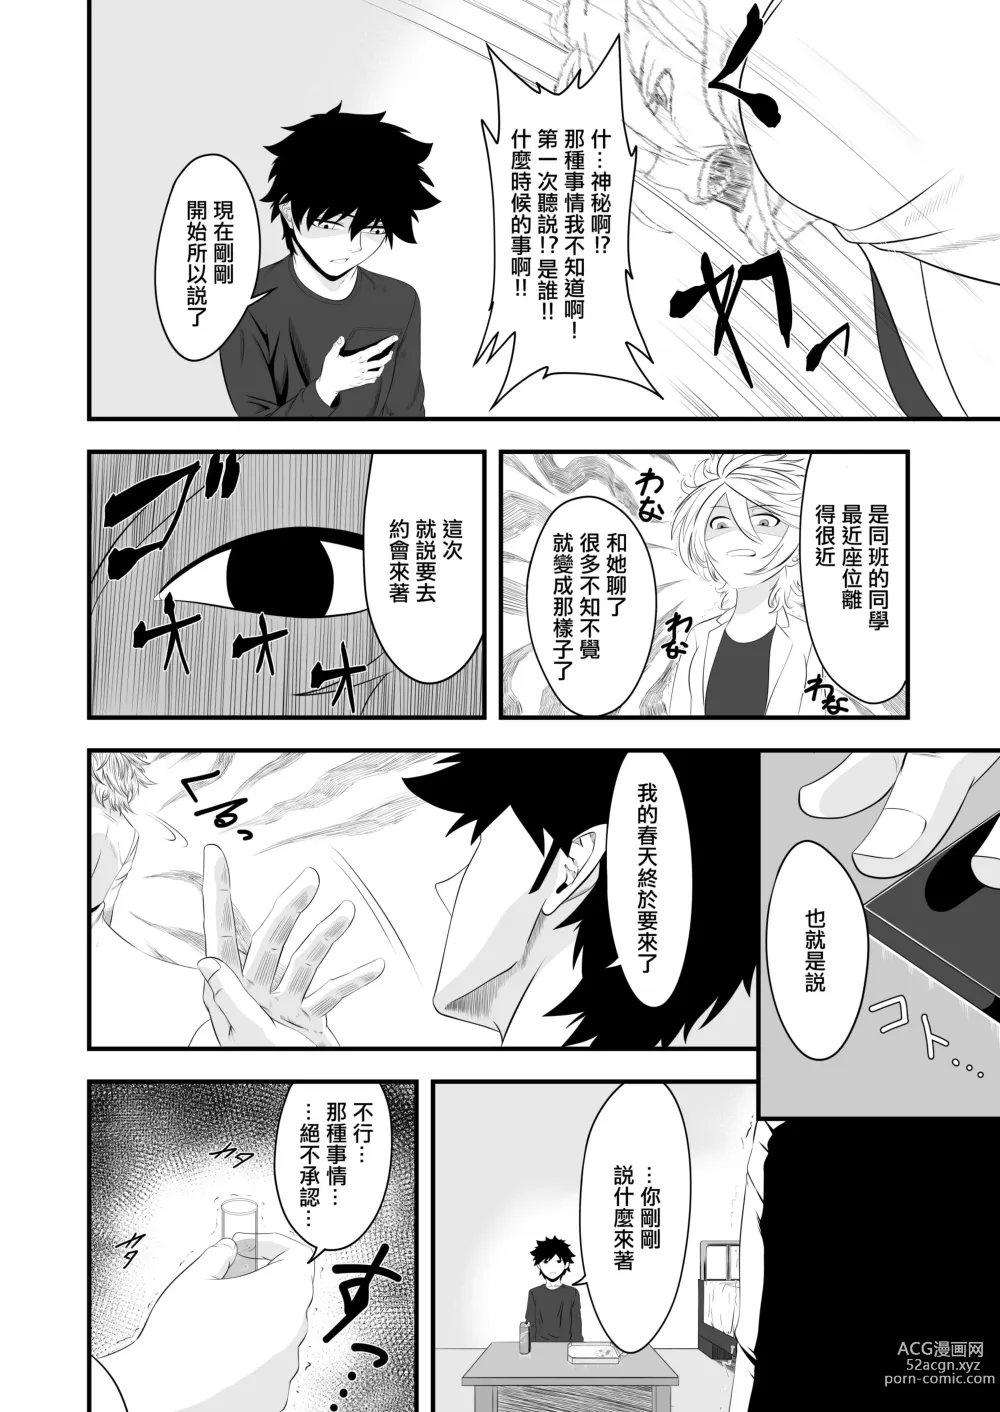 Page 6 of doujinshi 你是我的所有物嗎?